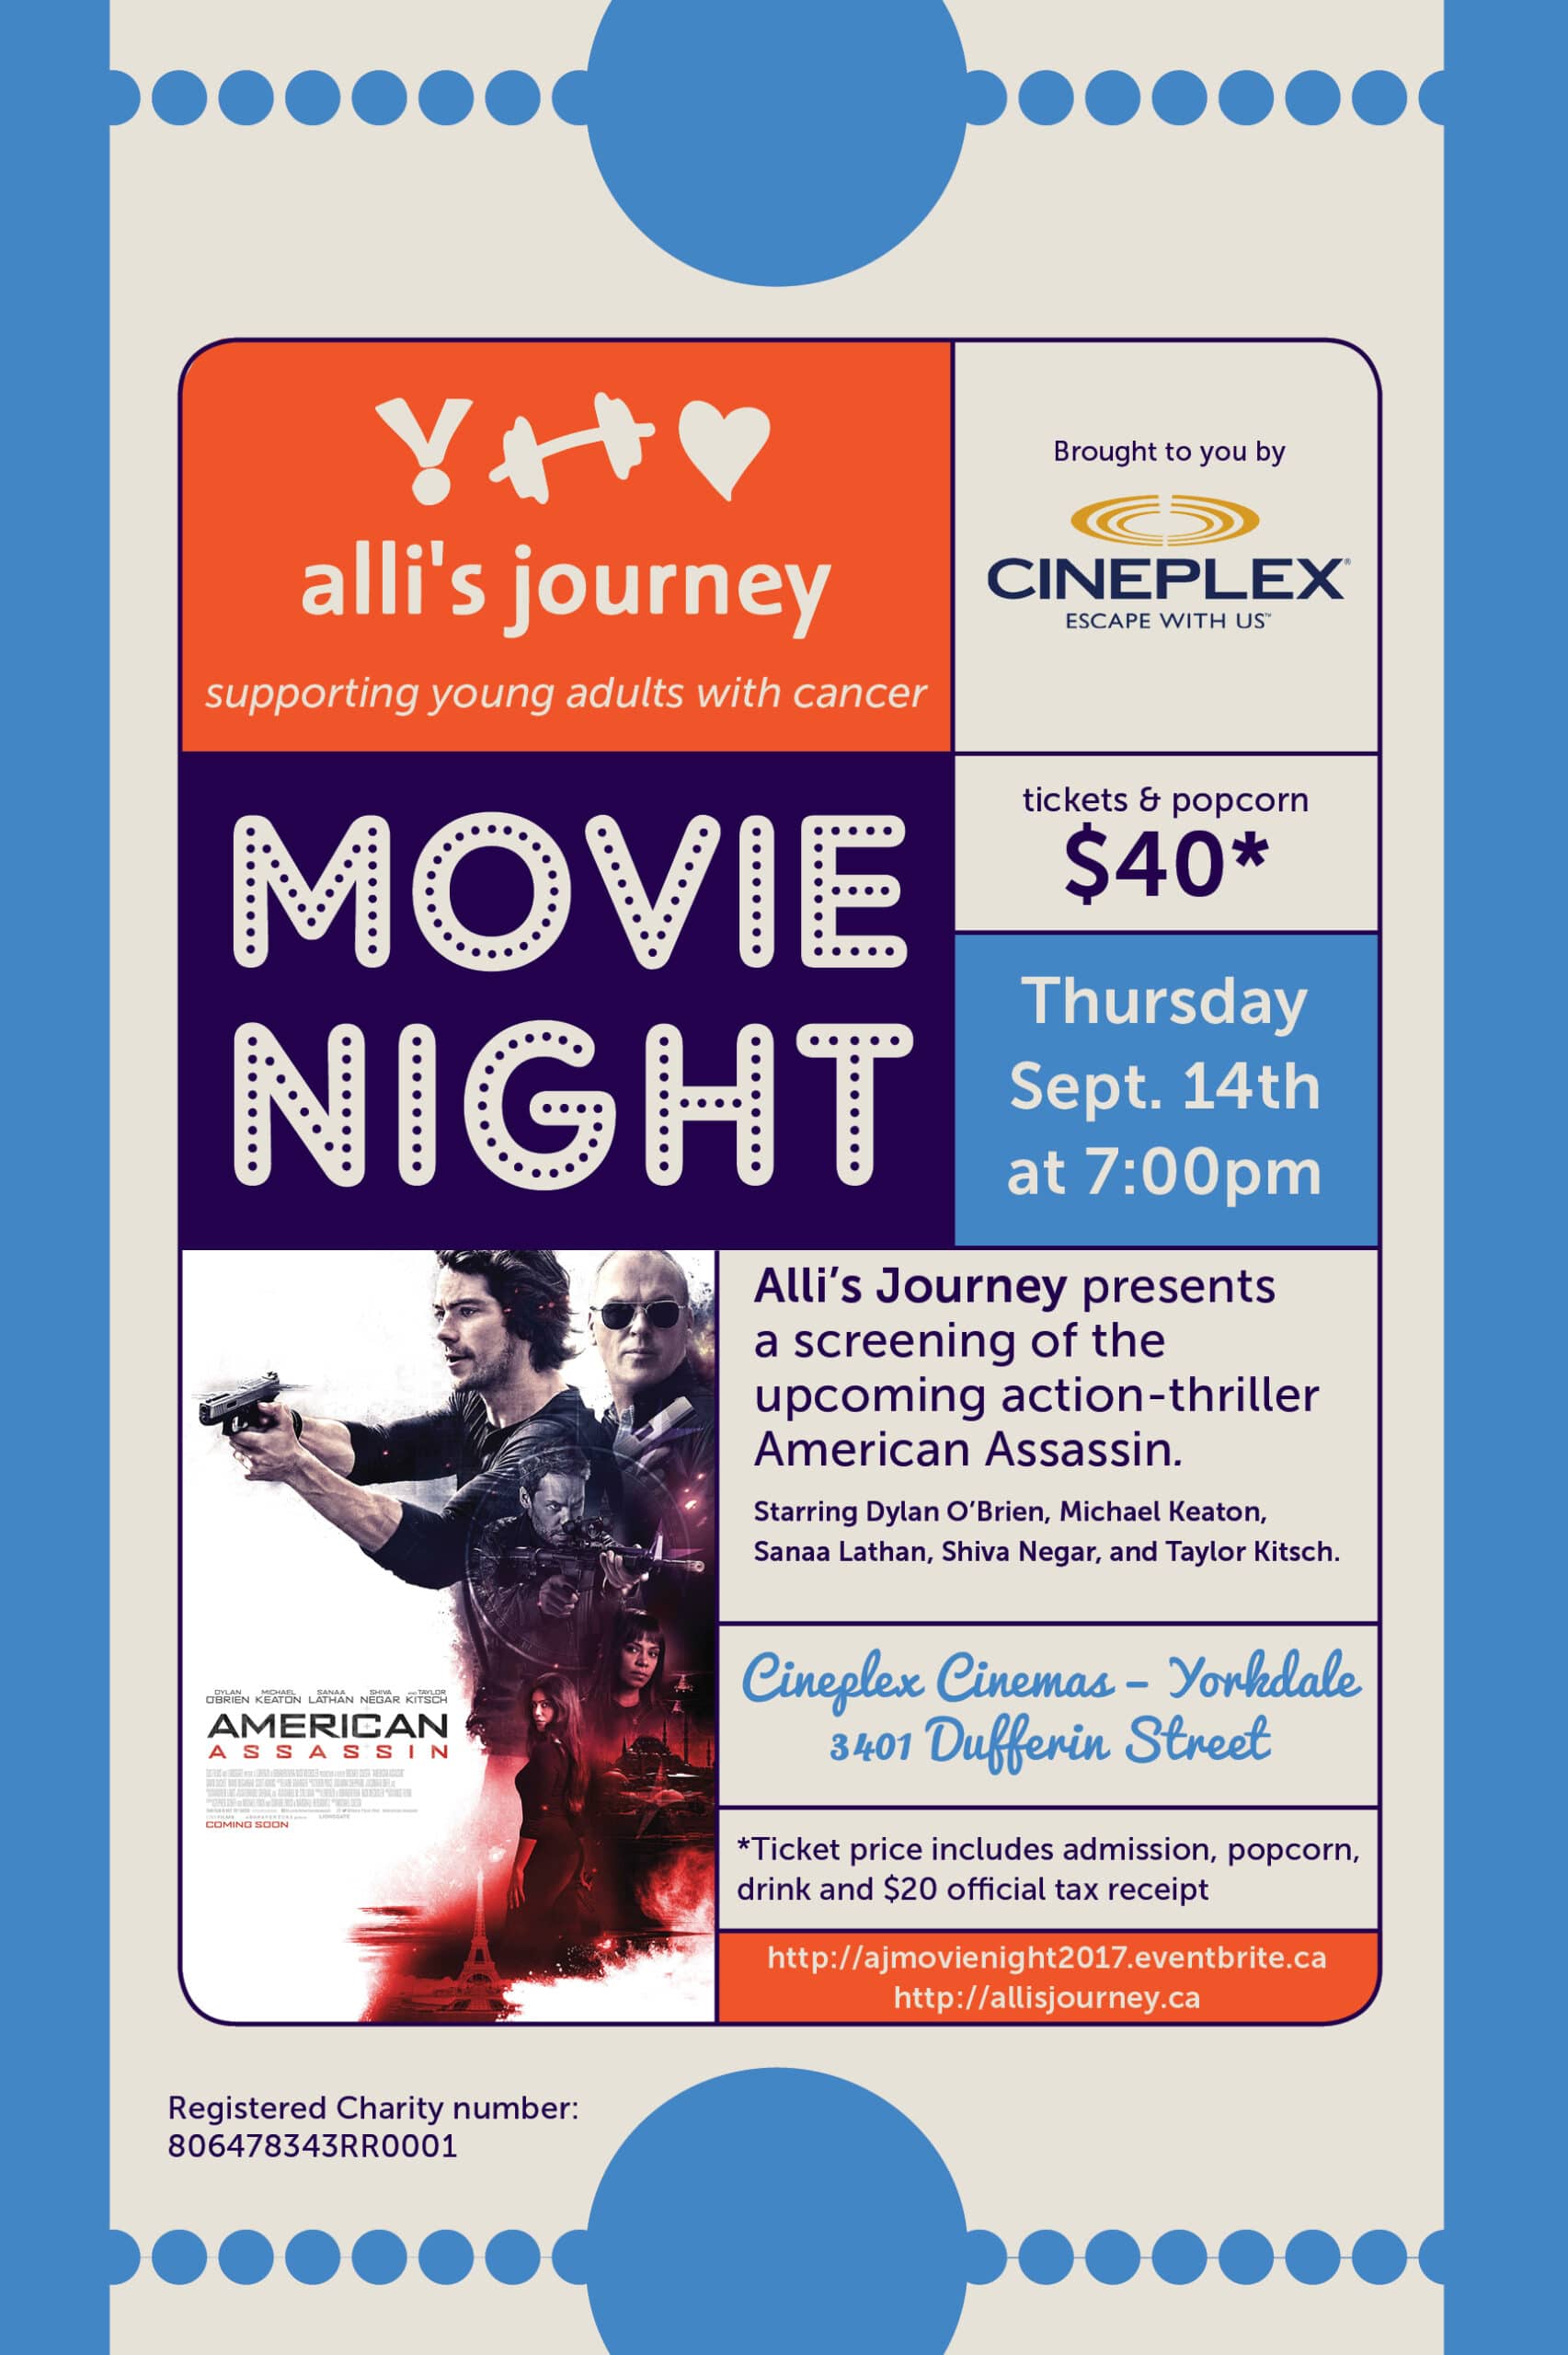 Alli’s Journey movie night fundraiser: Join Us!